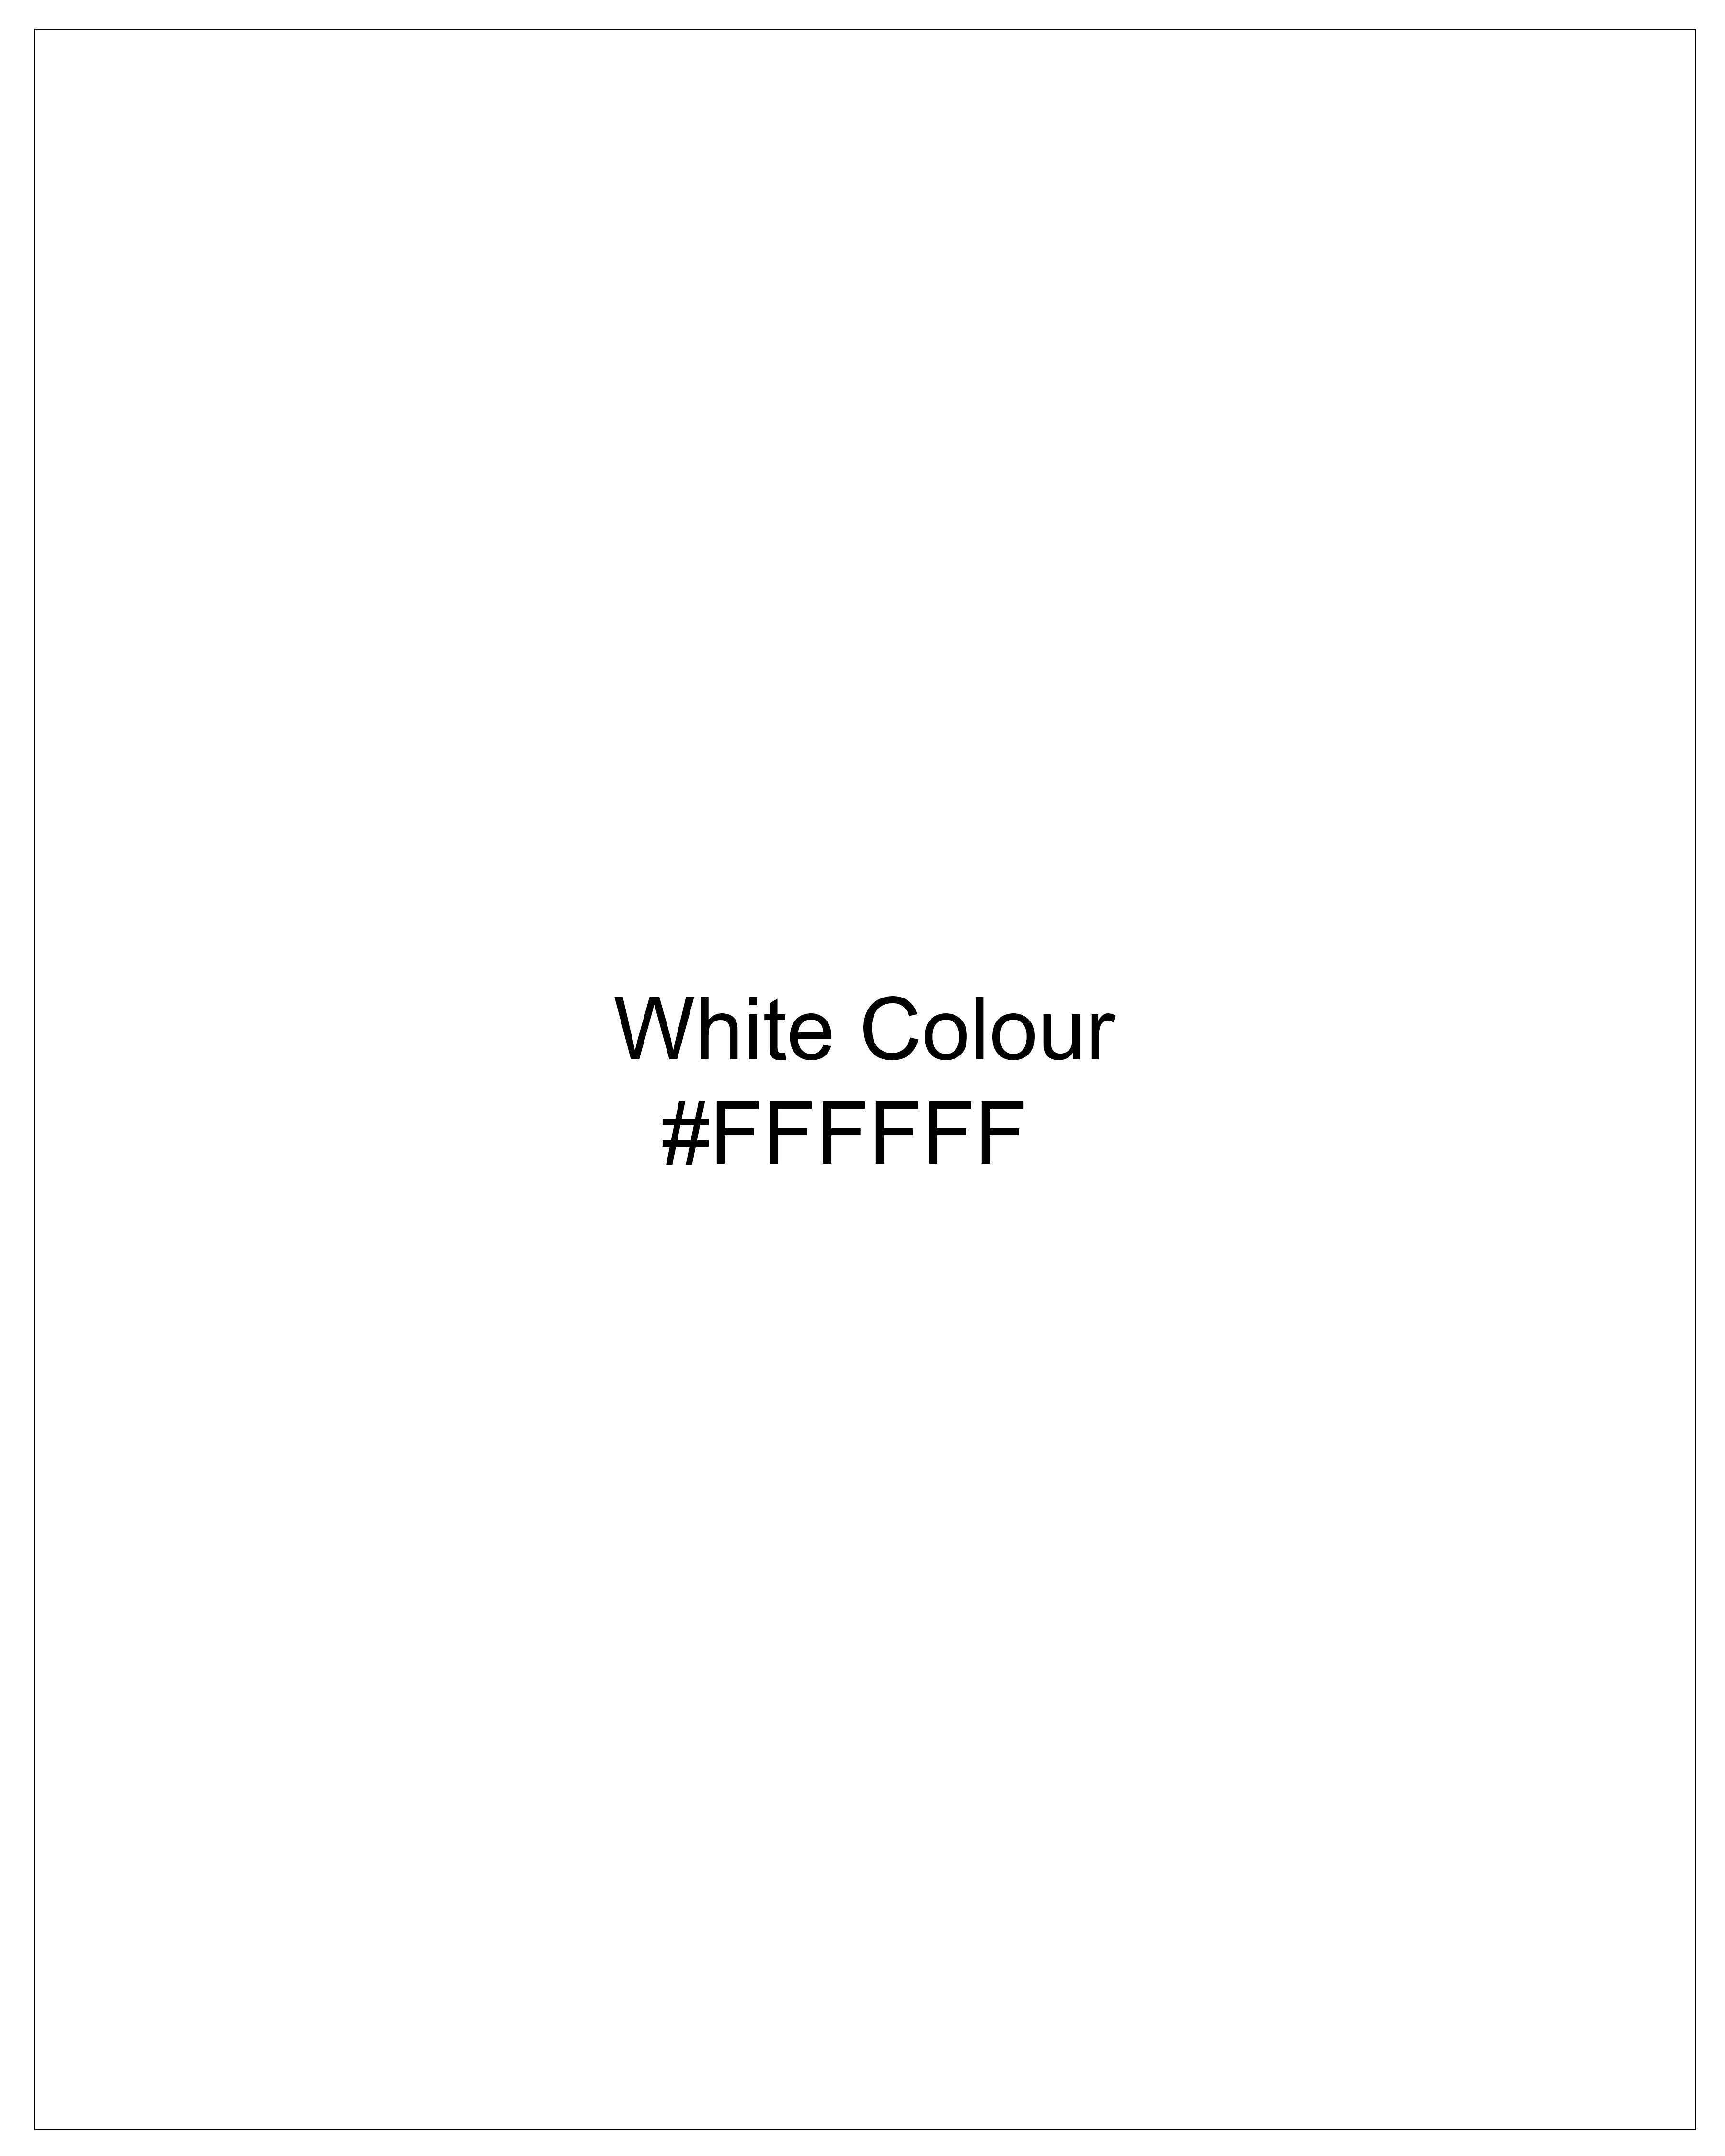 Bright White Dobby Textured Premium Giza Cotton Shirt 8991-BLK-38, 8991-BLK-H-38, 8991-BLK-39, 8991-BLK-H-39, 8991-BLK-40, 8991-BLK-H-40, 8991-BLK-42, 8991-BLK-H-42, 8991-BLK-44, 8991-BLK-H-44, 8991-BLK-46, 8991-BLK-H-46, 8991-BLK-48, 8991-BLK-H-48, 8991-BLK-50, 8991-BLK-H-50, 8991-BLK-52, 8991-BLK-H-52